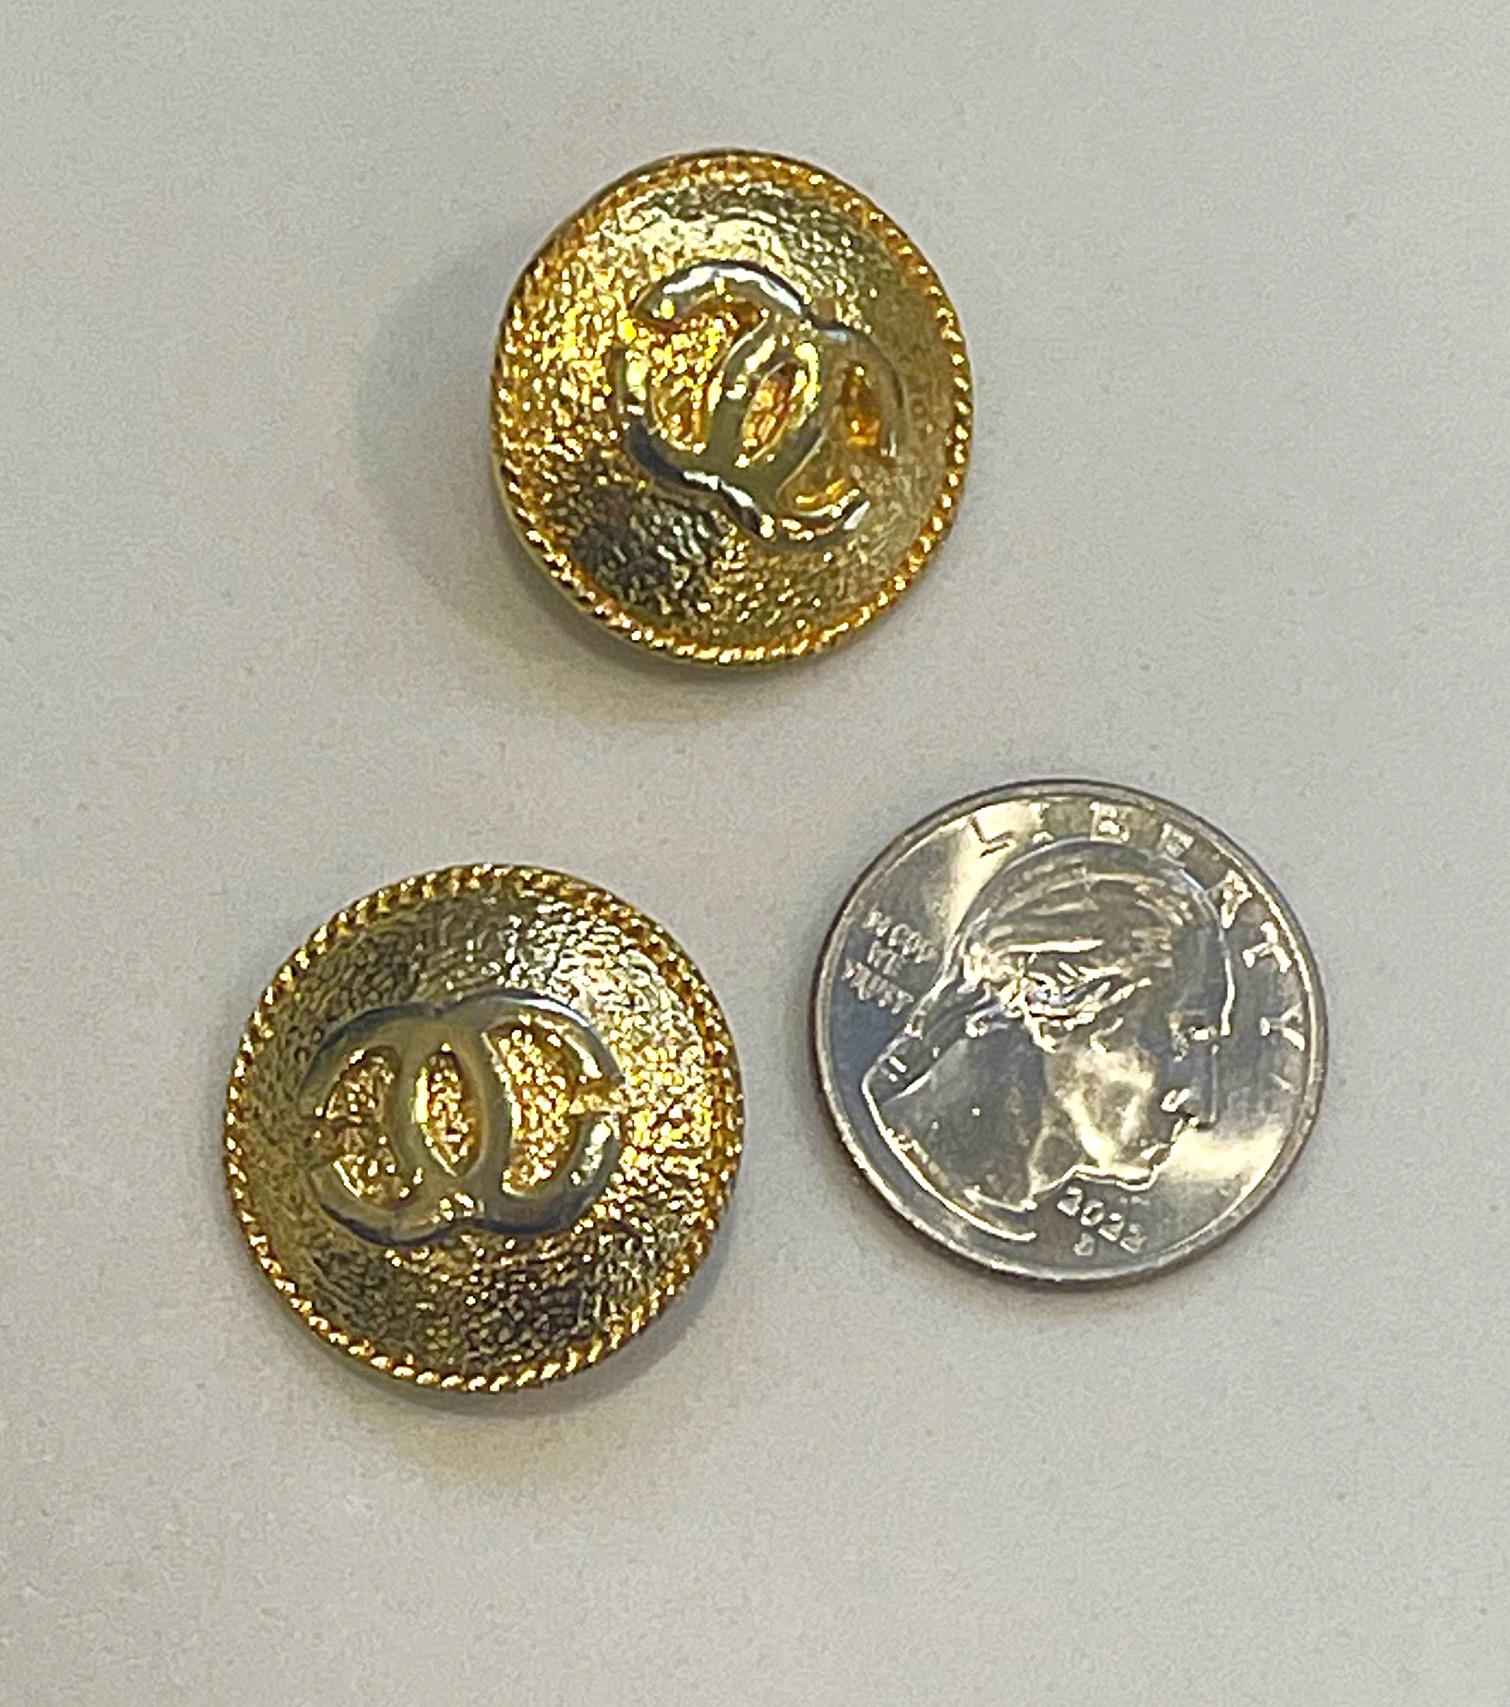 Zwei vintage CHANEL goldfarbene Knöpfe mit CC-Logo-Prägung. Can als Knöpfe verwendet werden, oder kann leicht in Ohrringe oder eine Brosche verwandelt werden.
In gutem Zustand 
Maße: 1 Zoll x 1 Zoll